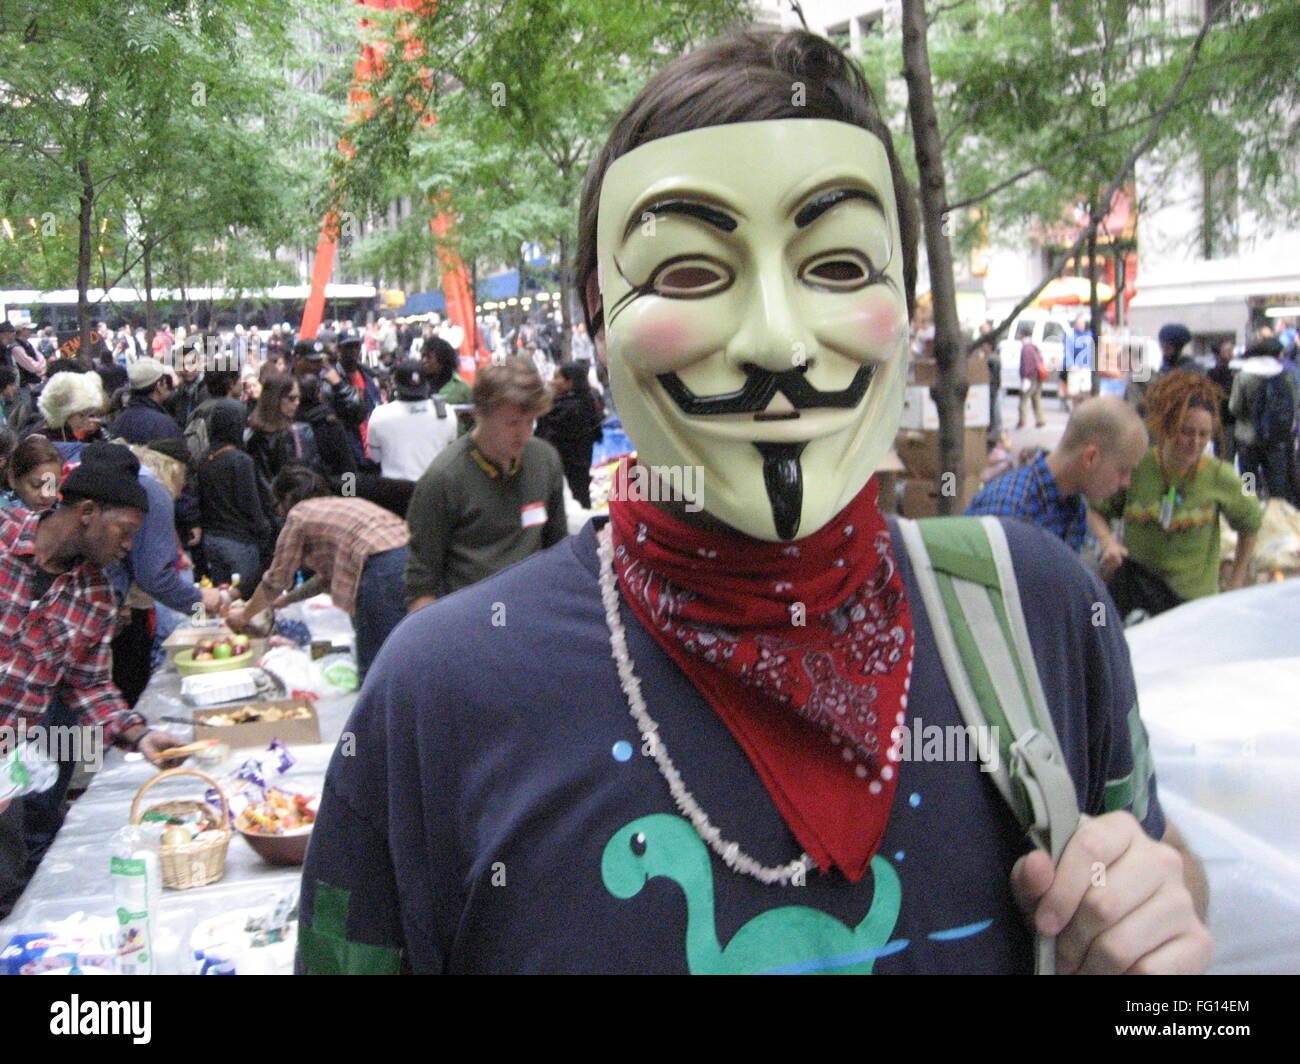 Ocupar WALL STREET, 2011. /NA manifestante Occupy Wall Street en el campamento en el parque Zuccotti, en Nueva York, vistiendo una máscara de Guy Fawkes, popularizada por la novela gráfica 'V de Vendetta', y que se ha asociado con varios anti-establecimiento ac Foto de stock